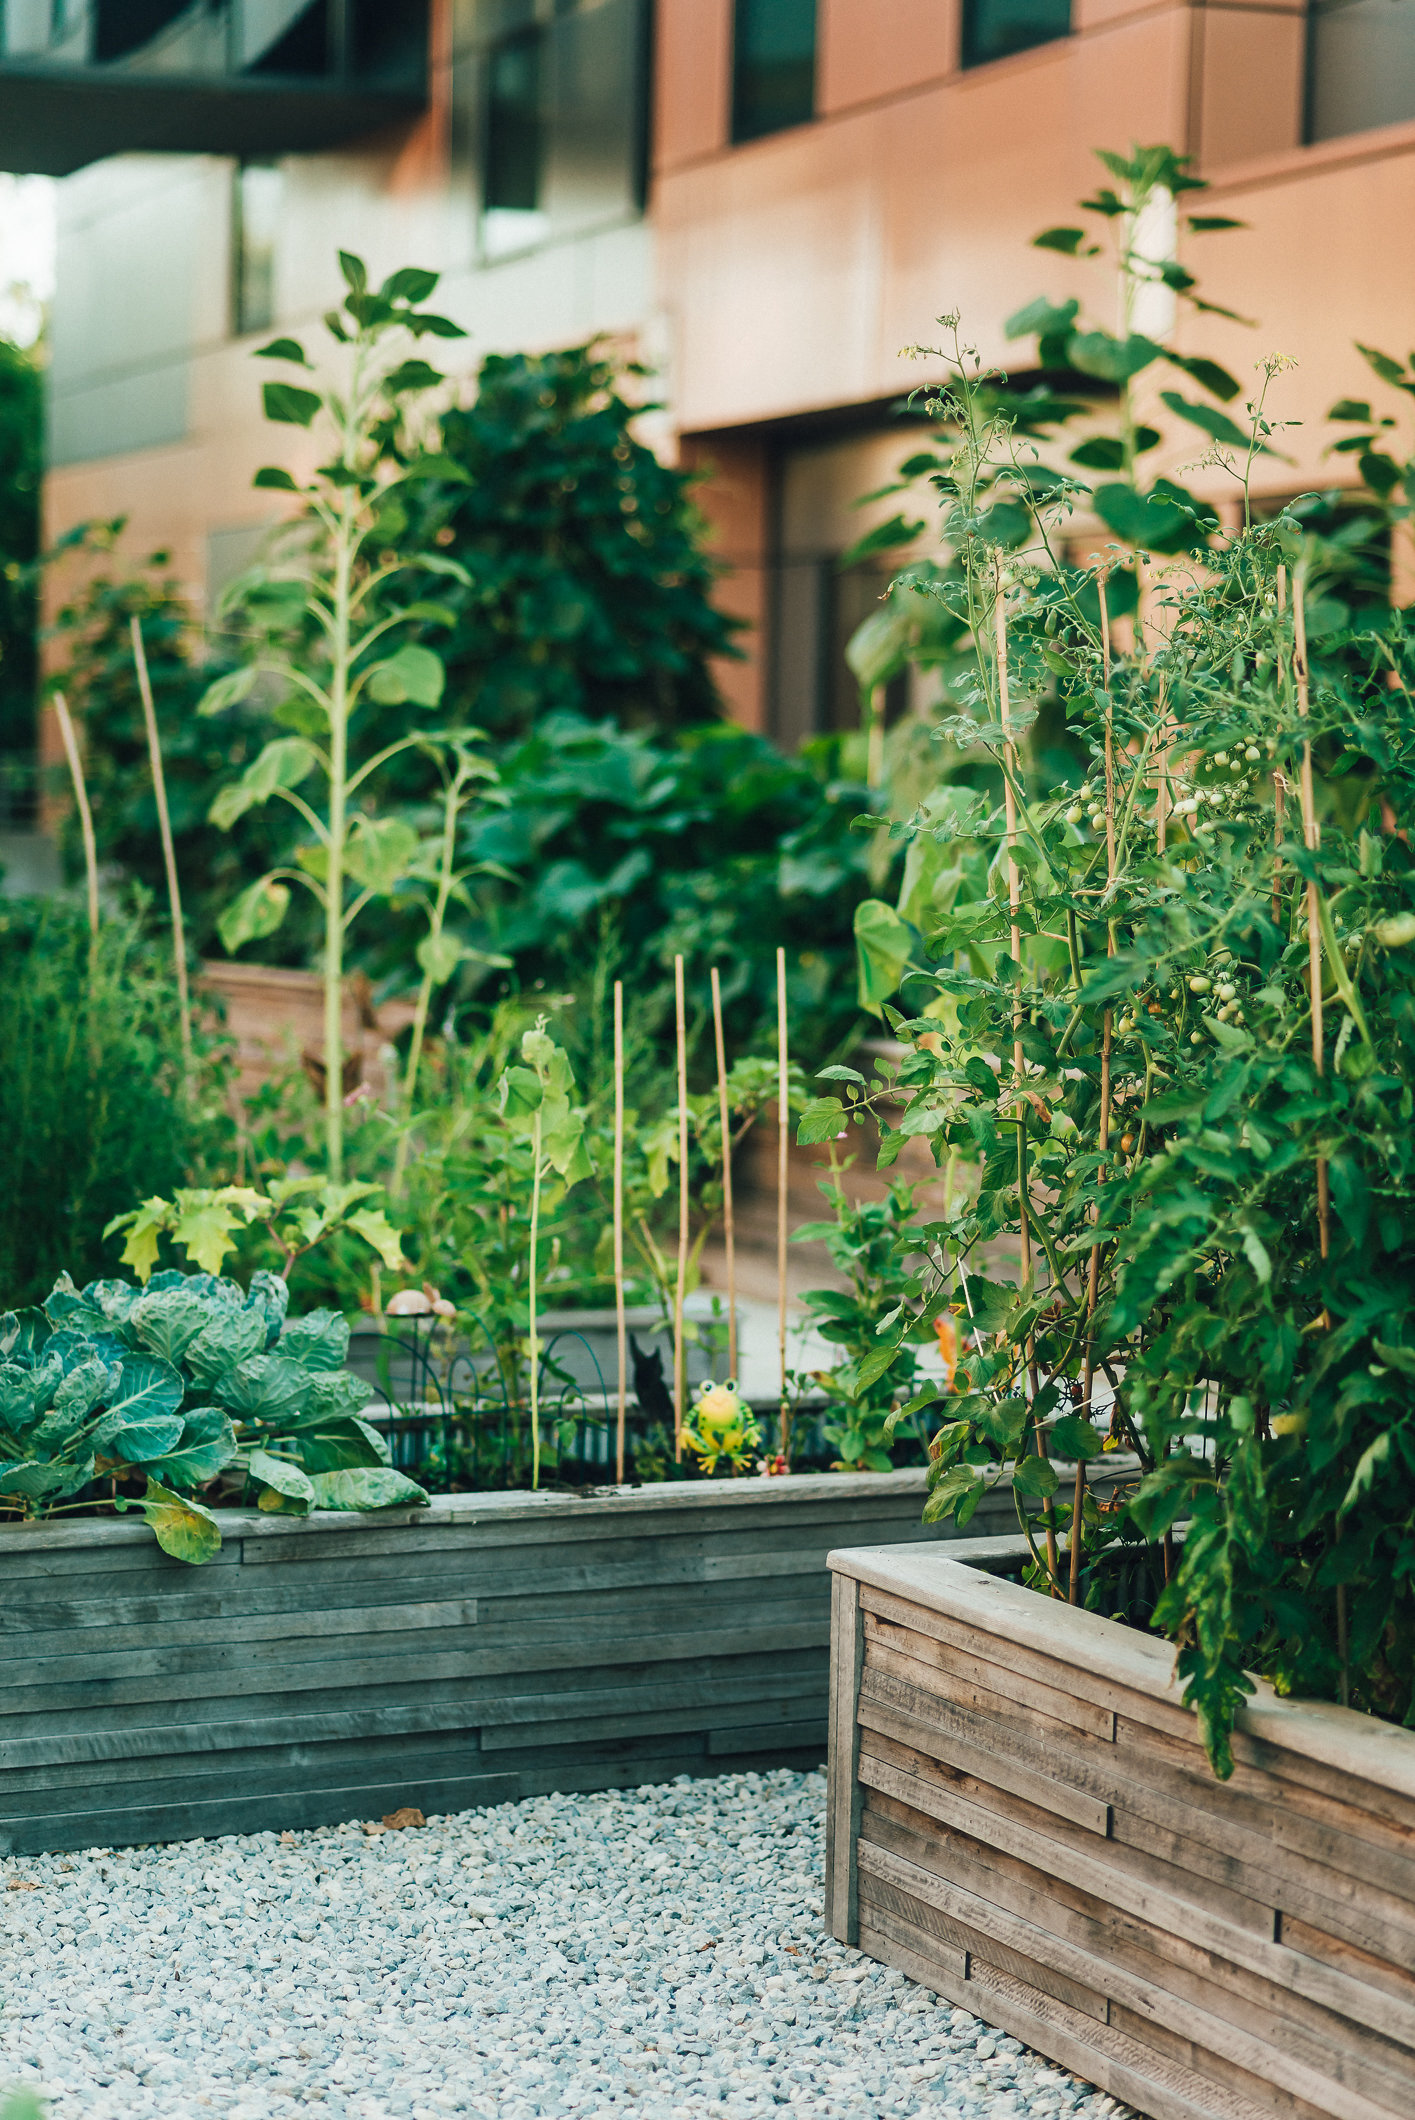 community garden in raised beds